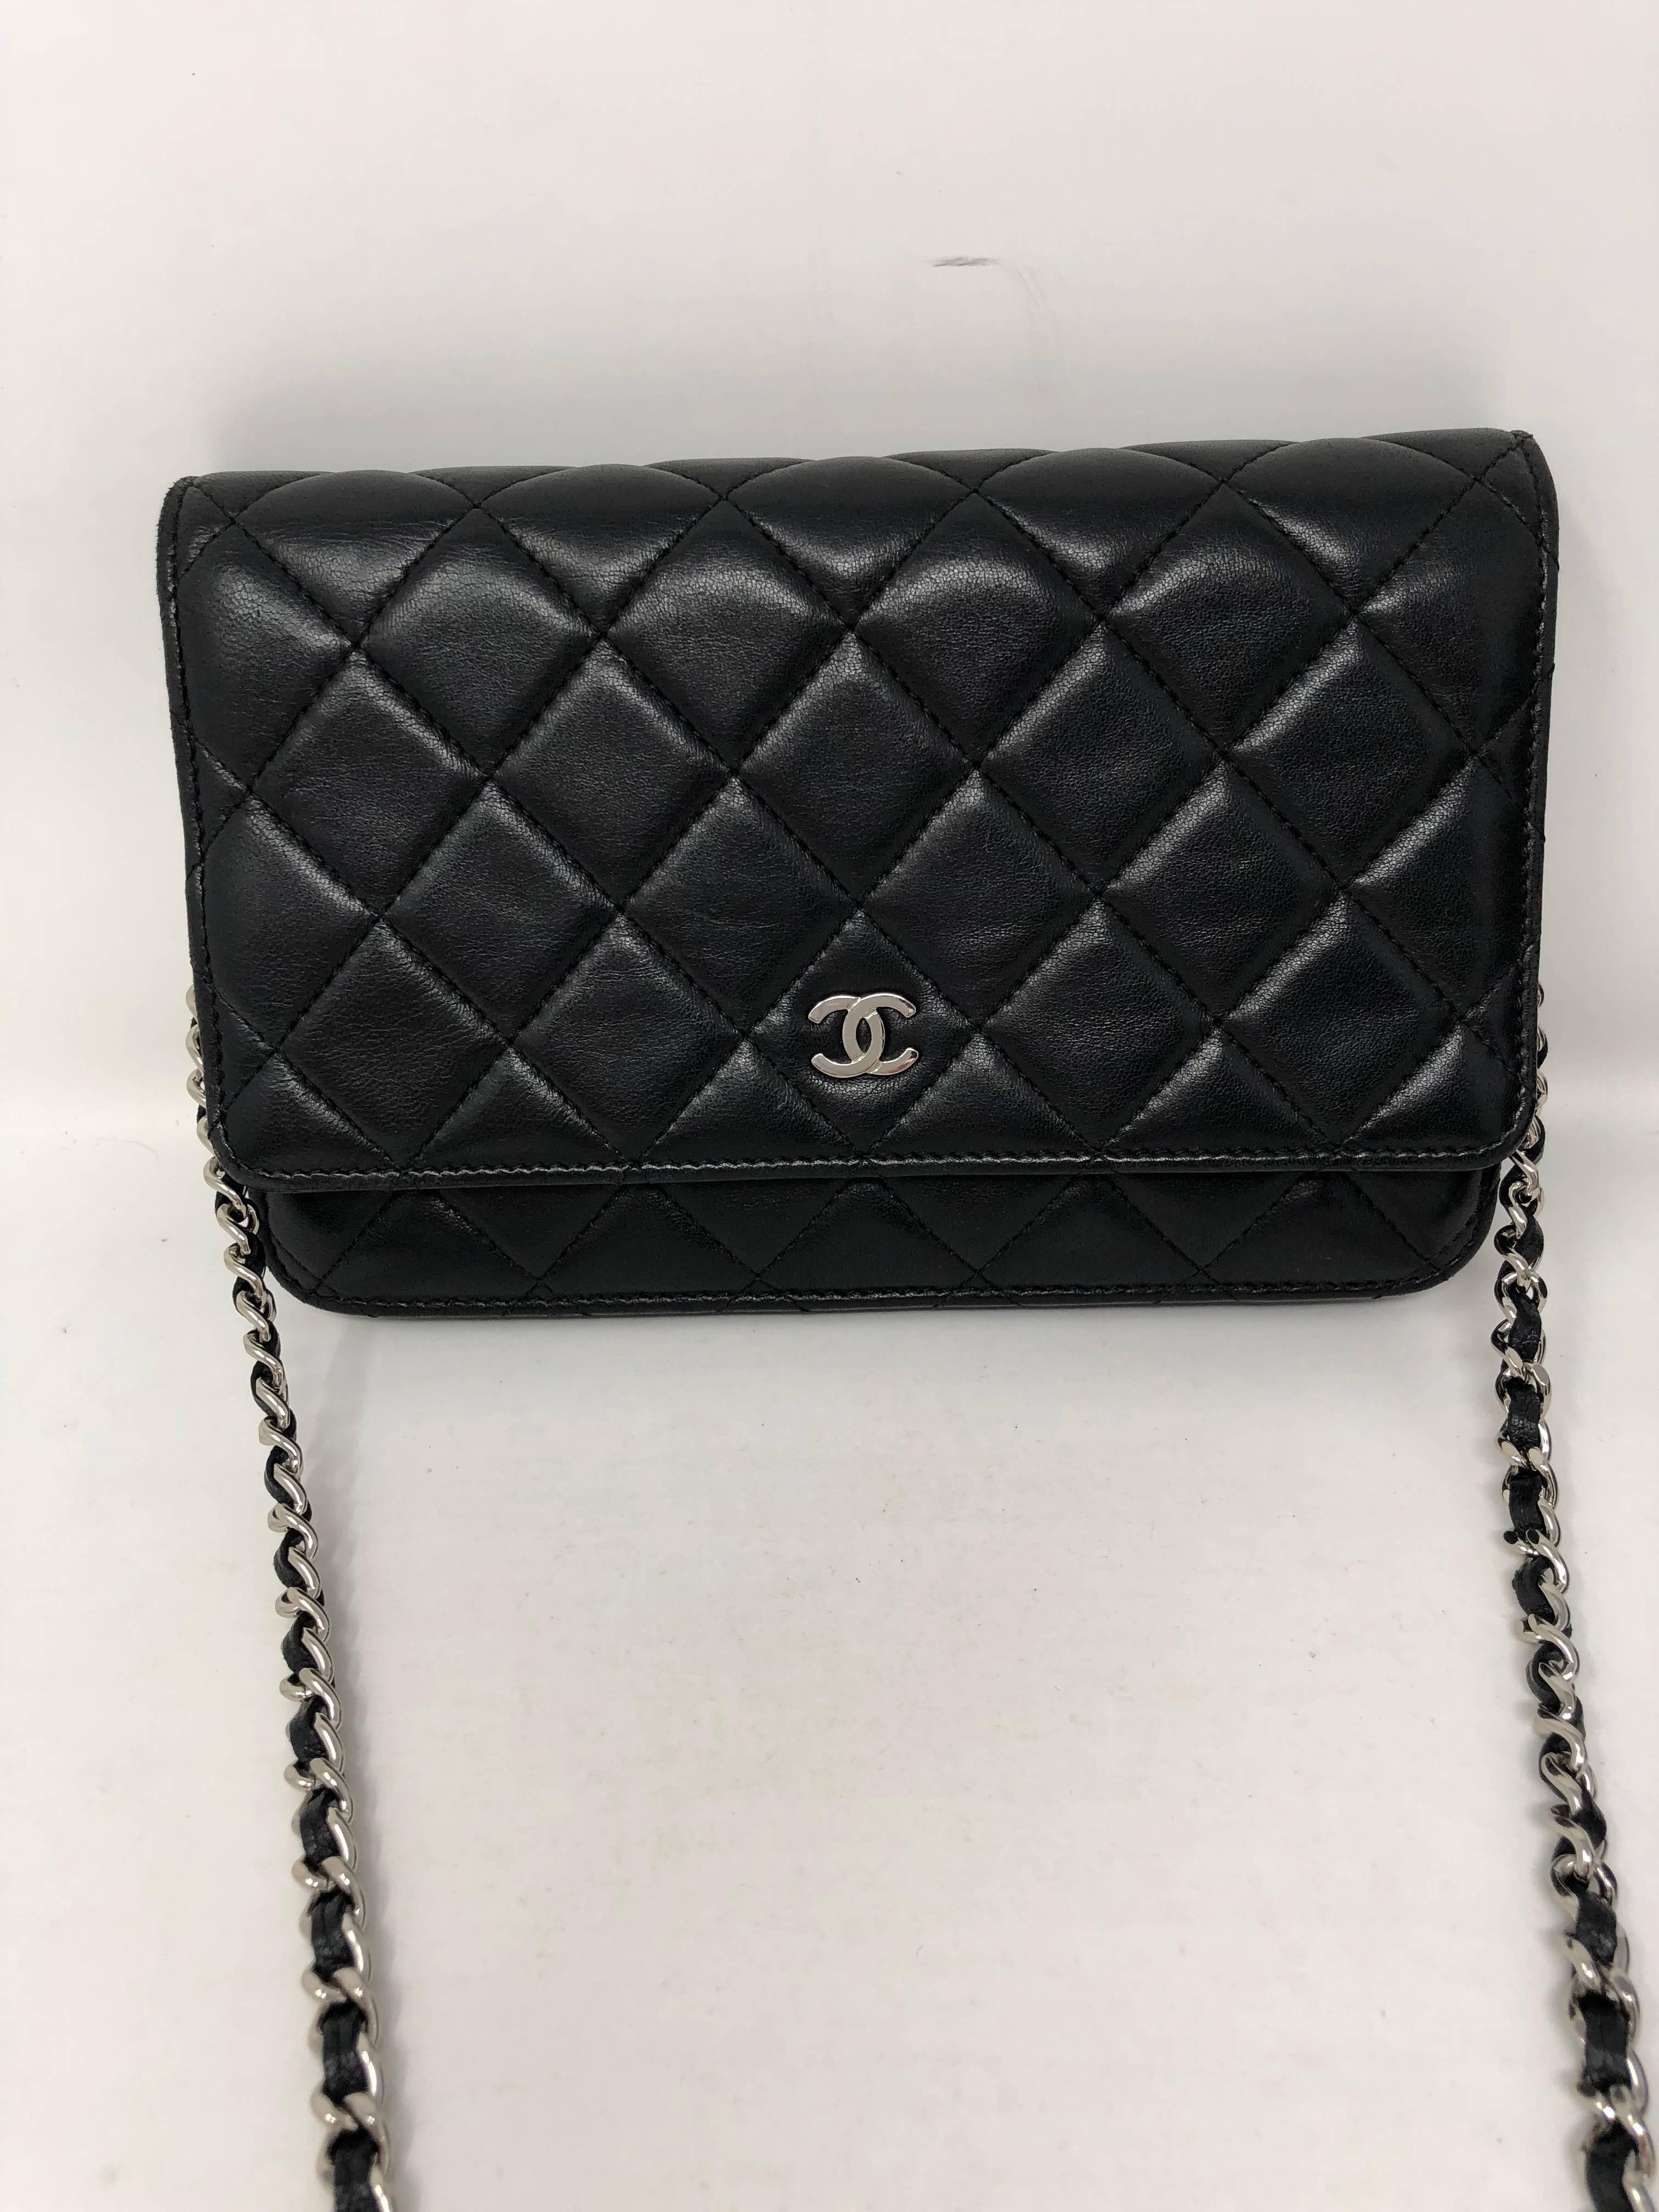 Women's or Men's Chanel Black Wallet on Chain Crossbody